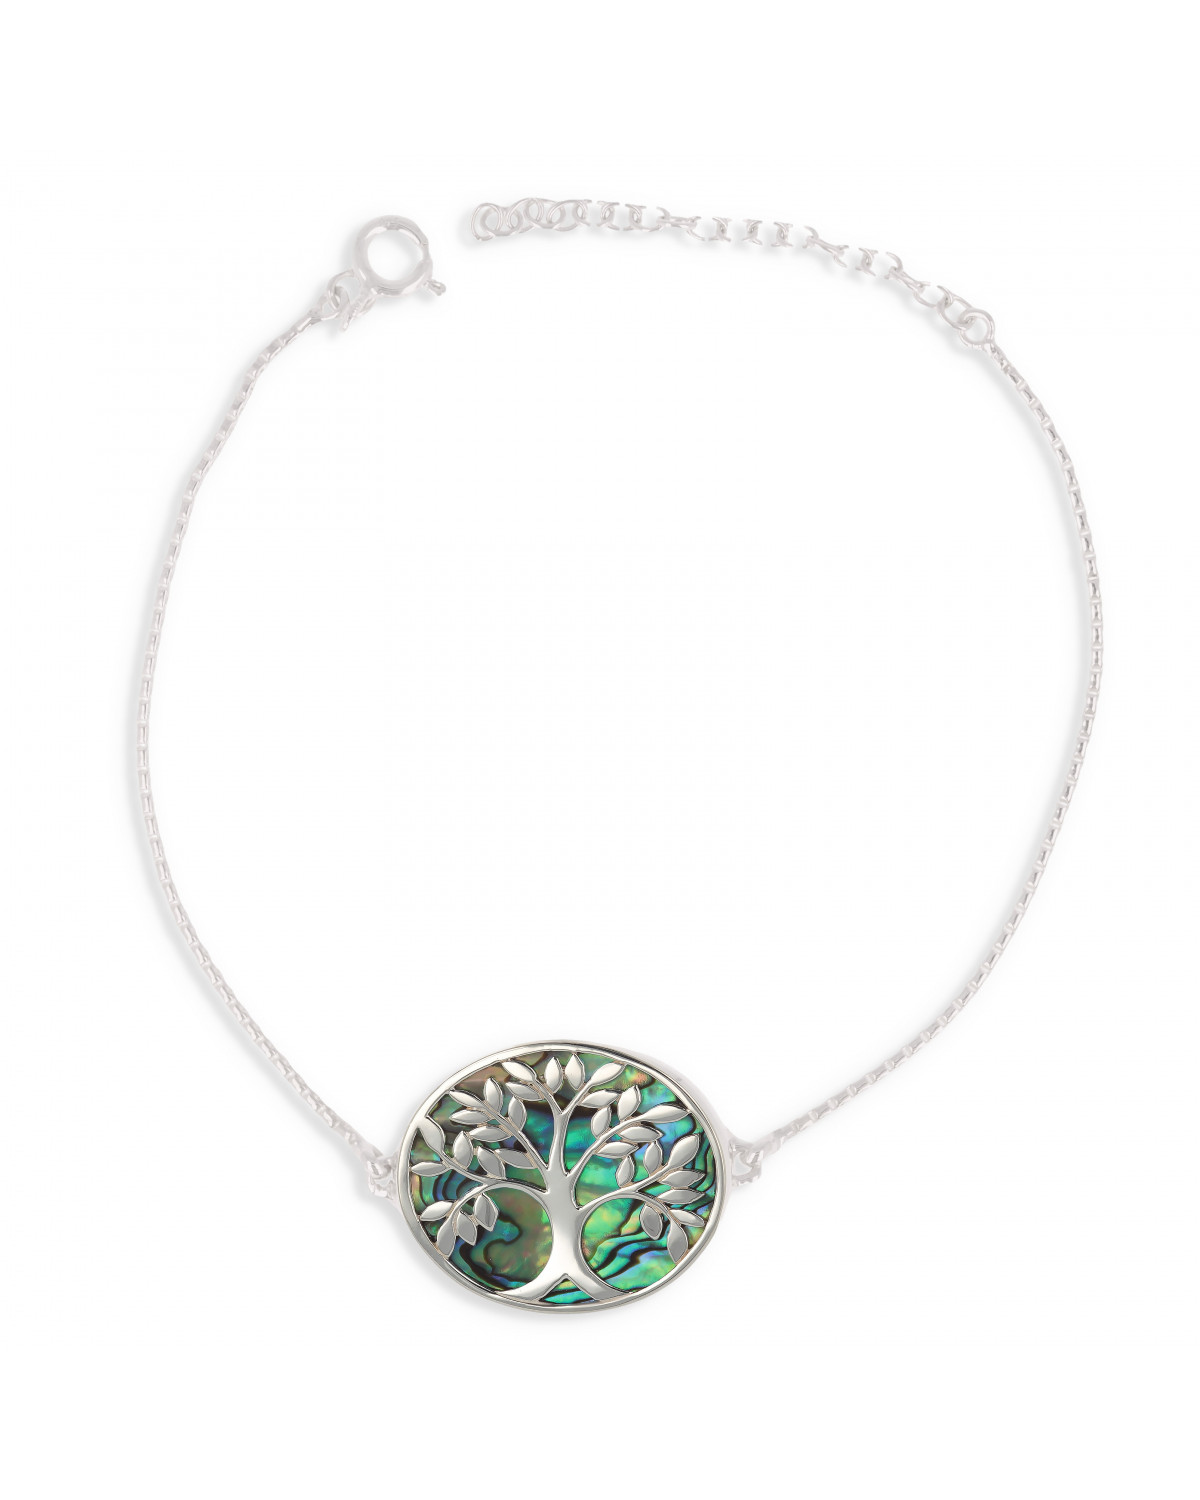 Bracelet réglable Nacre abalone sur argent massif rhodié arbre de vie forme ovale